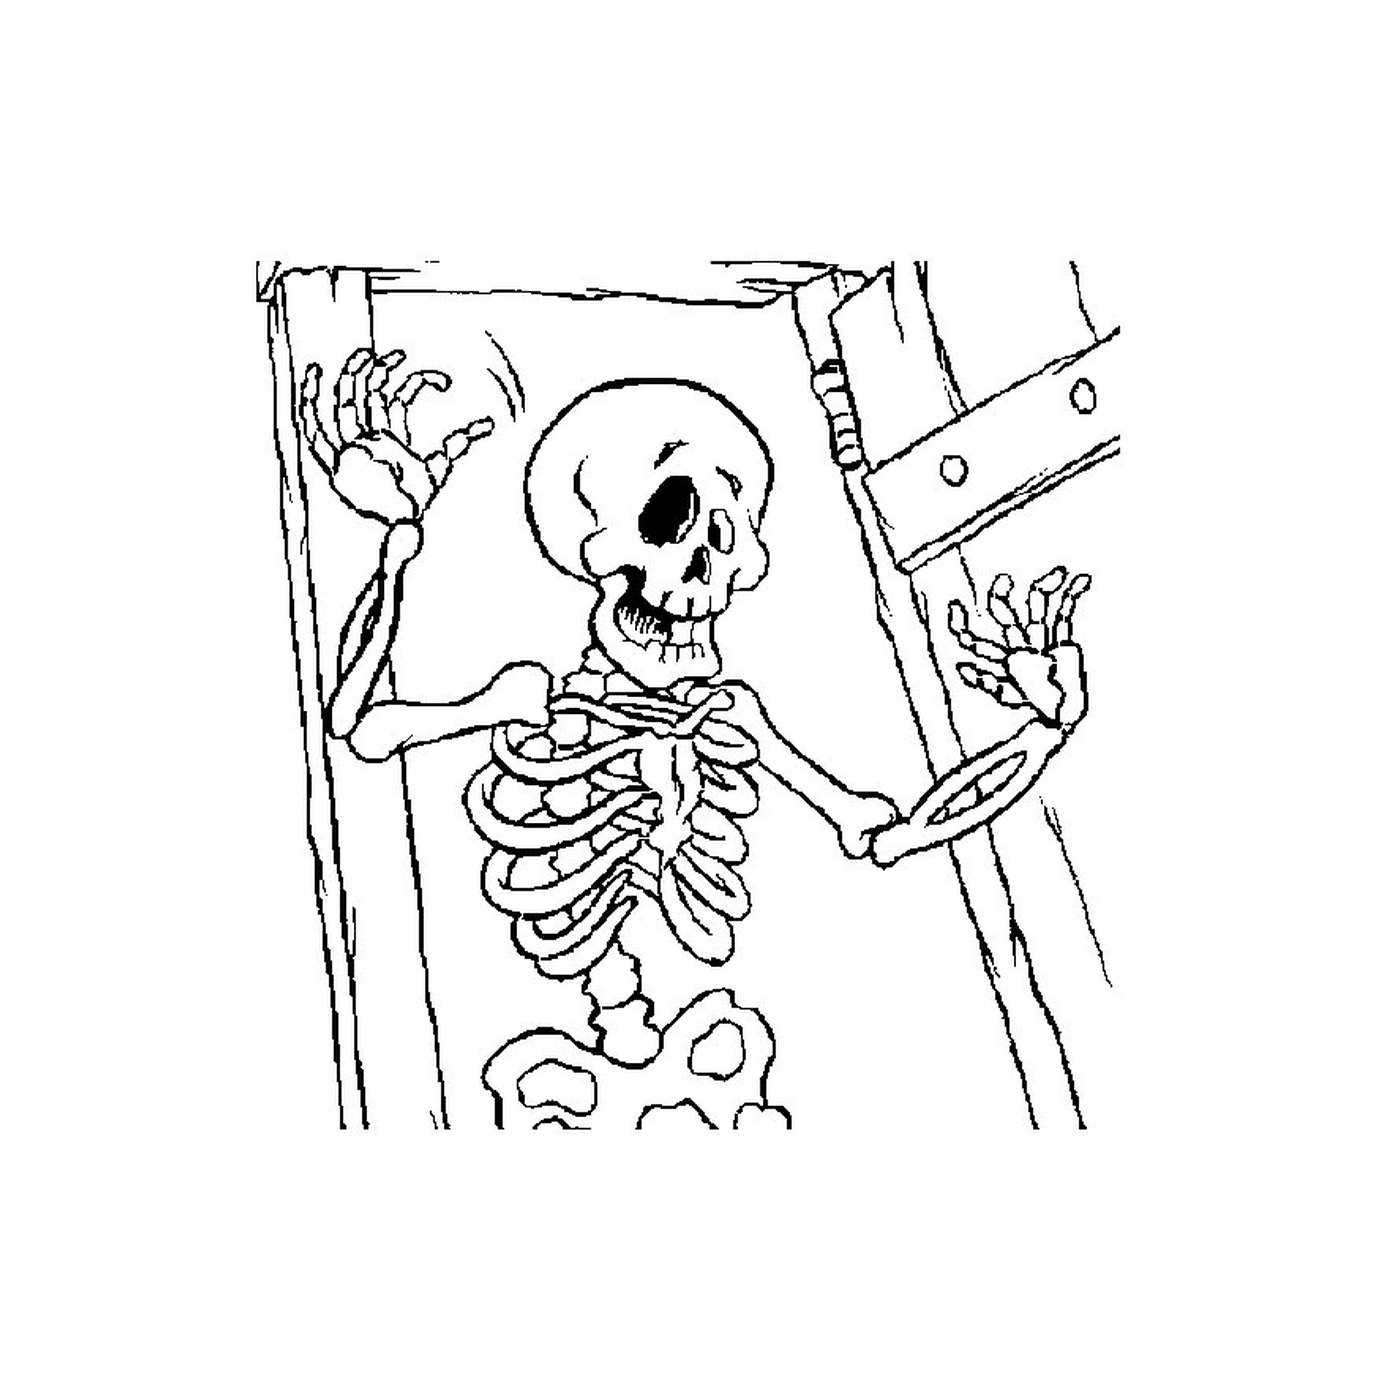   Squelette dans une pièce sombre 